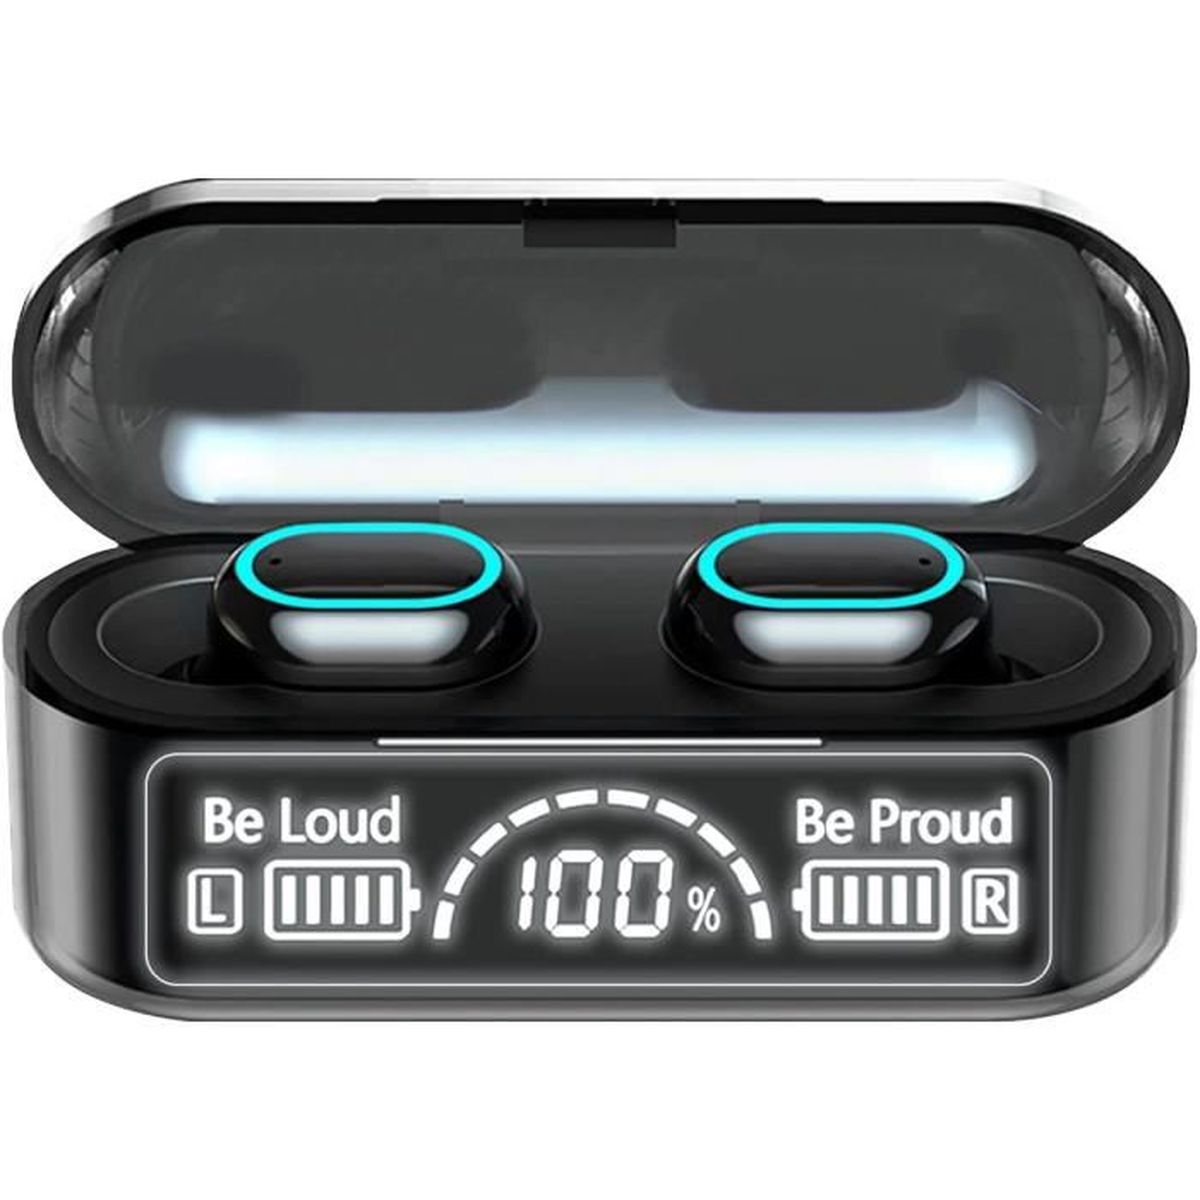 HD Mic Intégrés Ecouteur Bluetooth 5.1 HiFi Son Stéréo IPX7 Étanche et 35 Heures Durée de Lecture pour iOS et Android Telephone Contrôle Tactile Ecouteurs Bluetooth sans Fil 